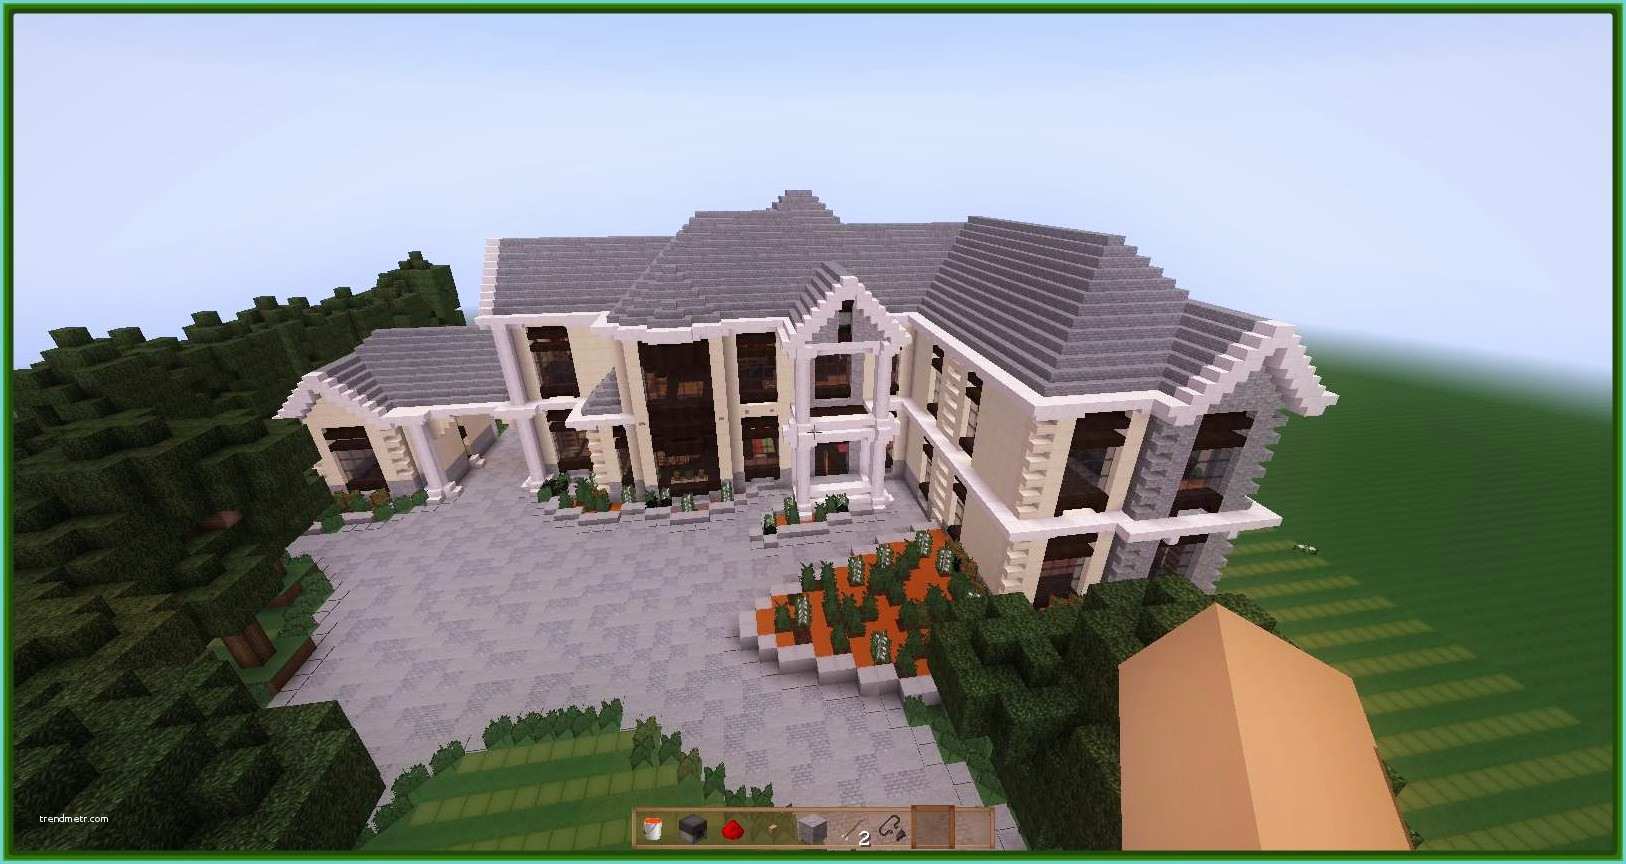 La Mejor Casa En Minecraft Imagenes De Las Mejores Casas En Minecraft Para Construir